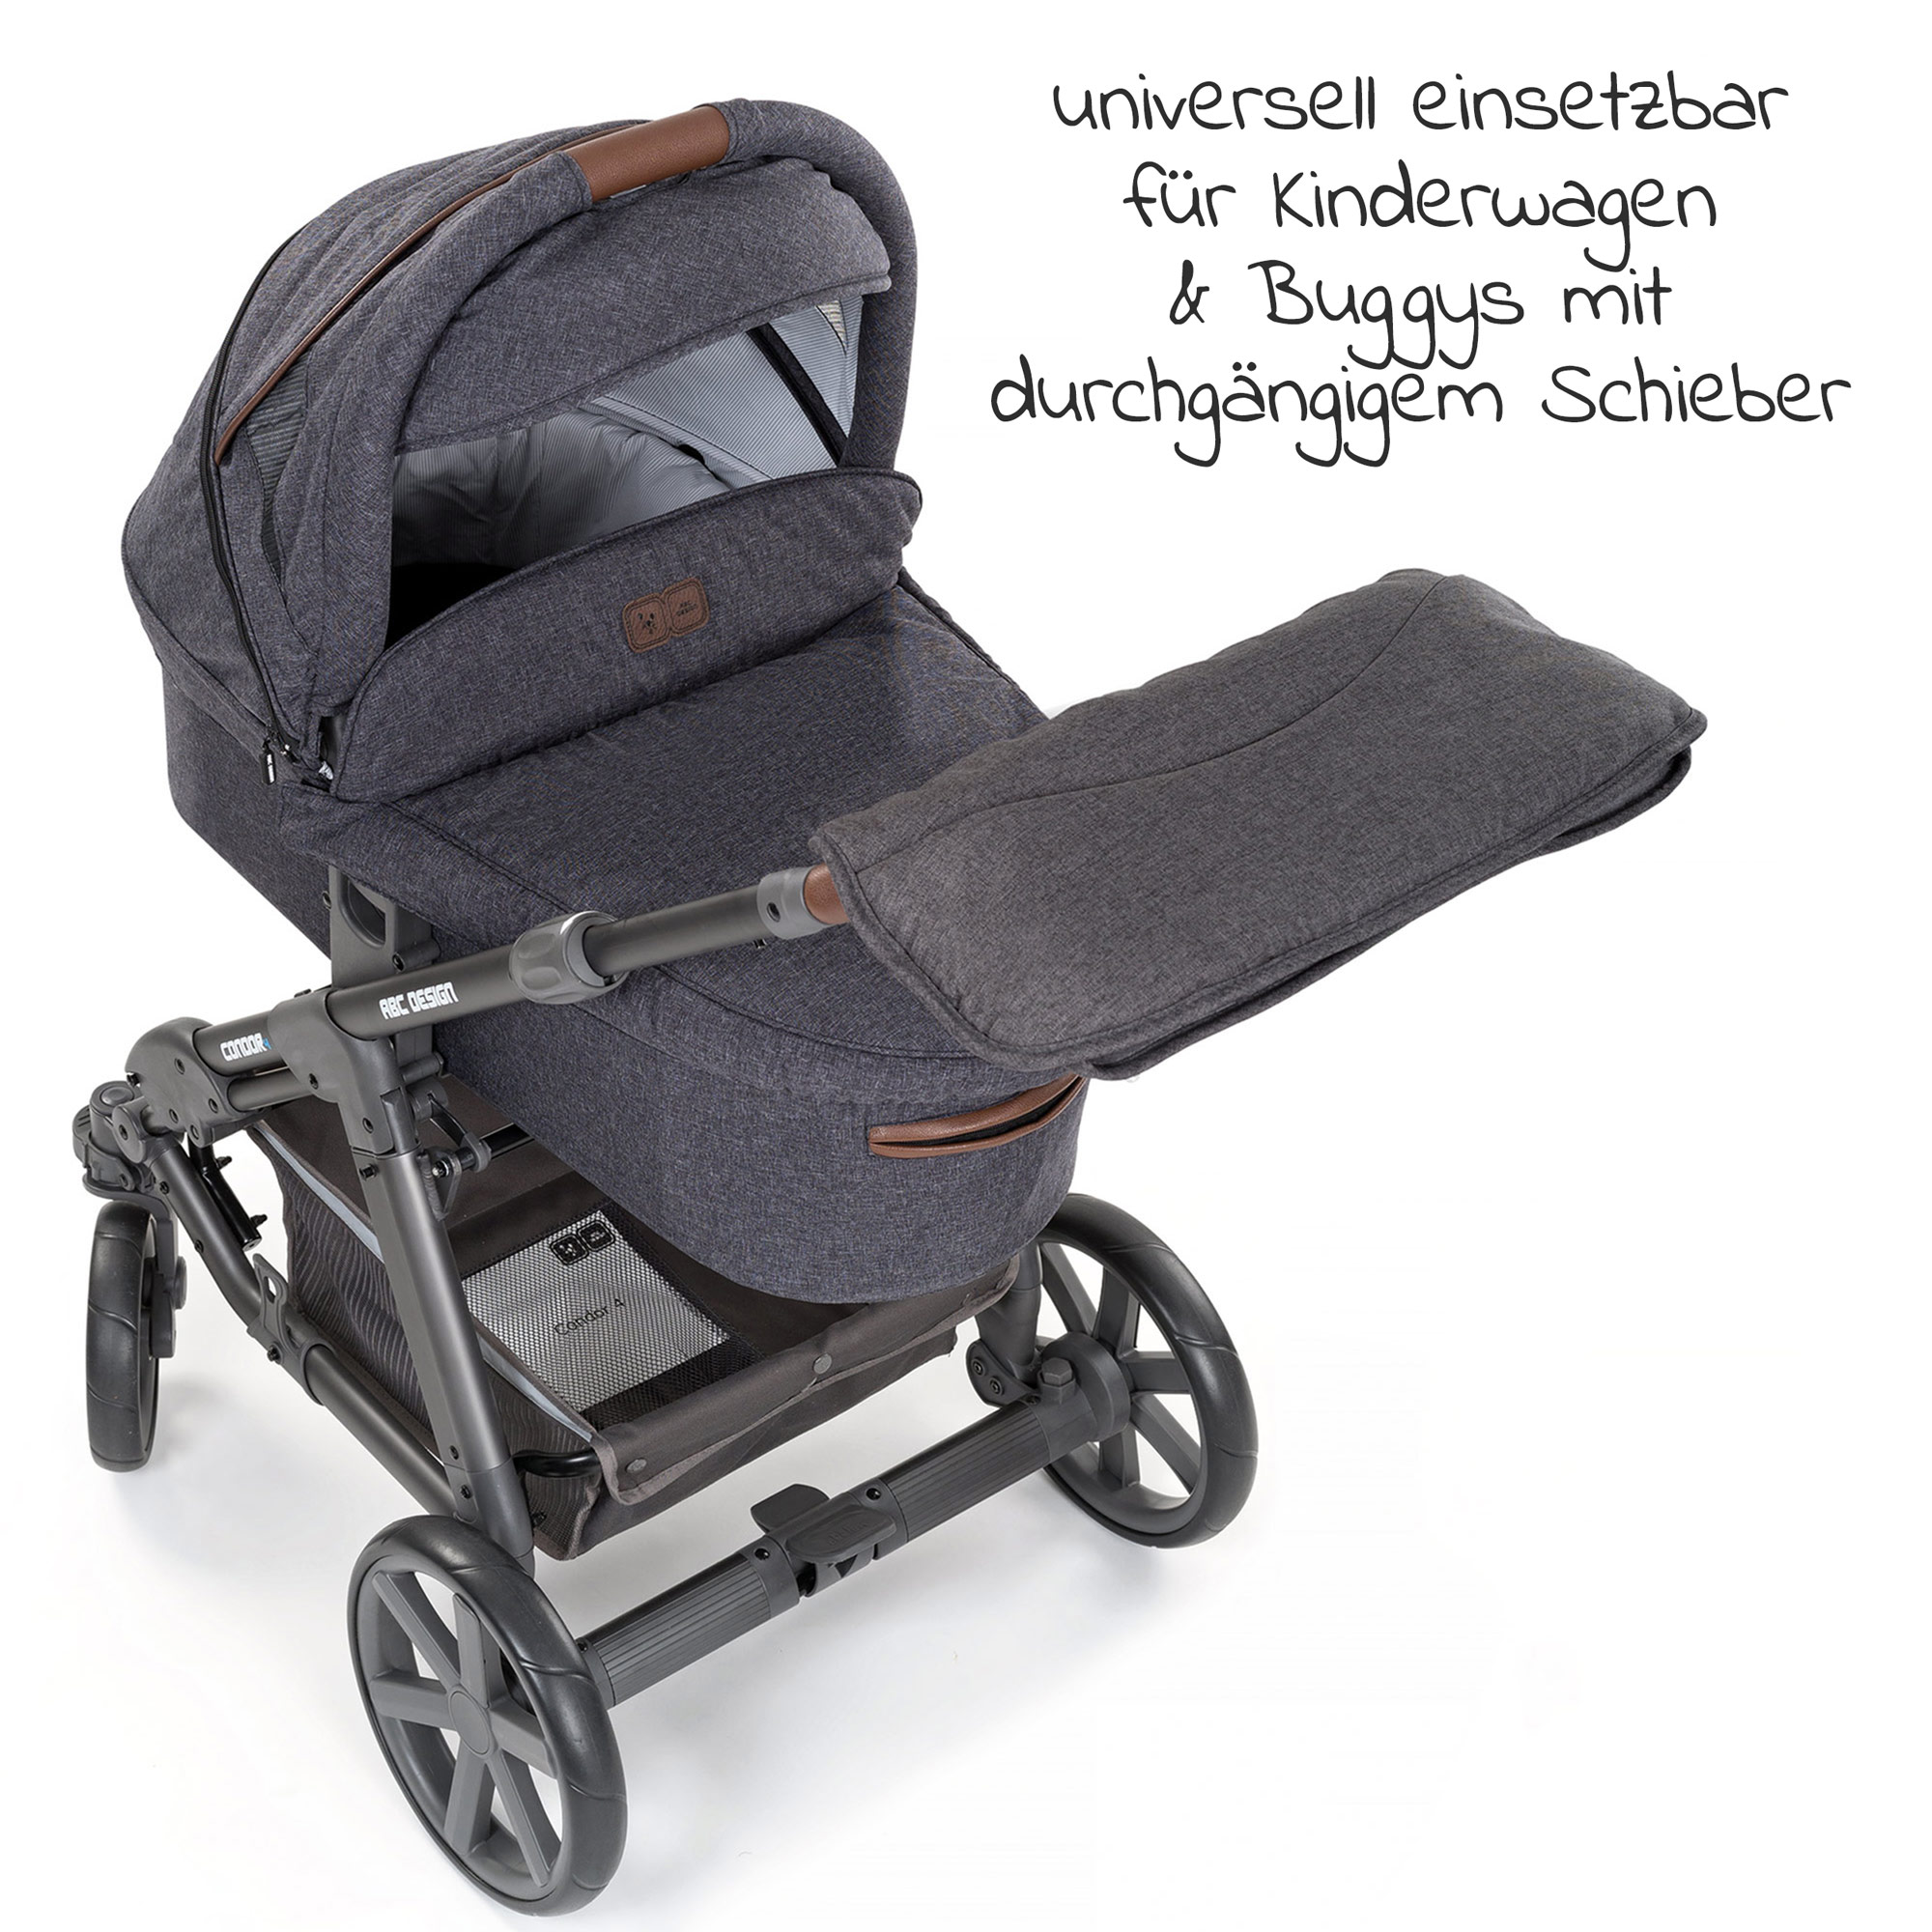 Handmuff Kinderwagen Buggy Babyschale Handwärmer Handschuhe für Kinderwagen DE 